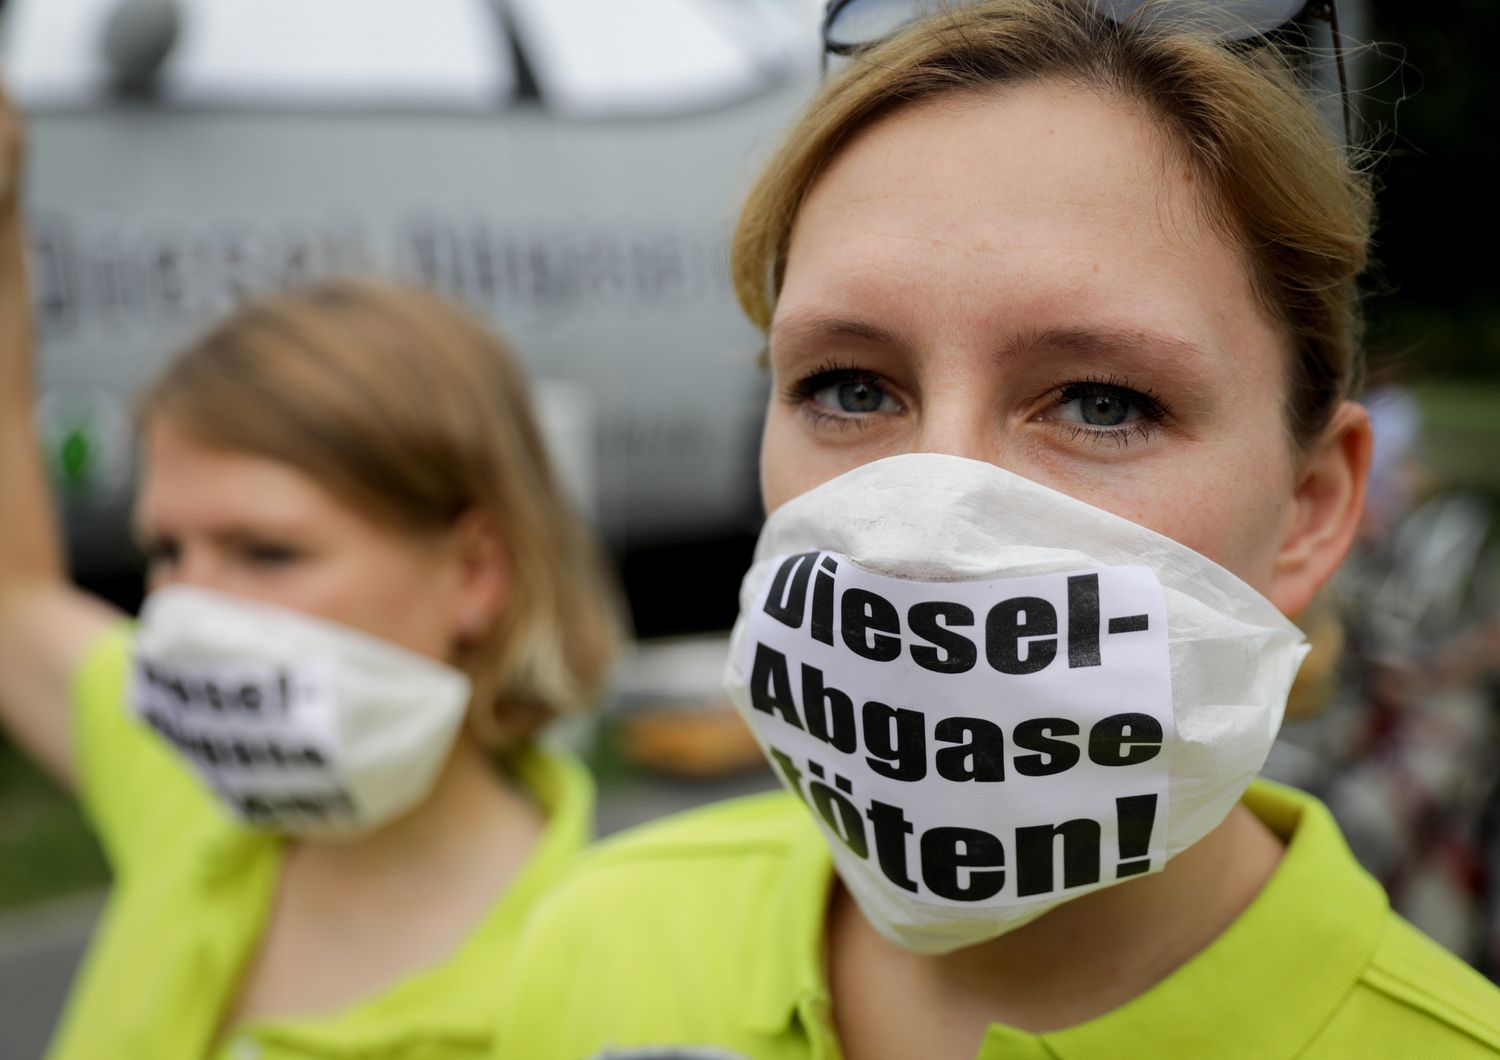 La guerra al diesel ha provocato un aumento delle emissioni di&nbsp;CO2&nbsp;in Europa